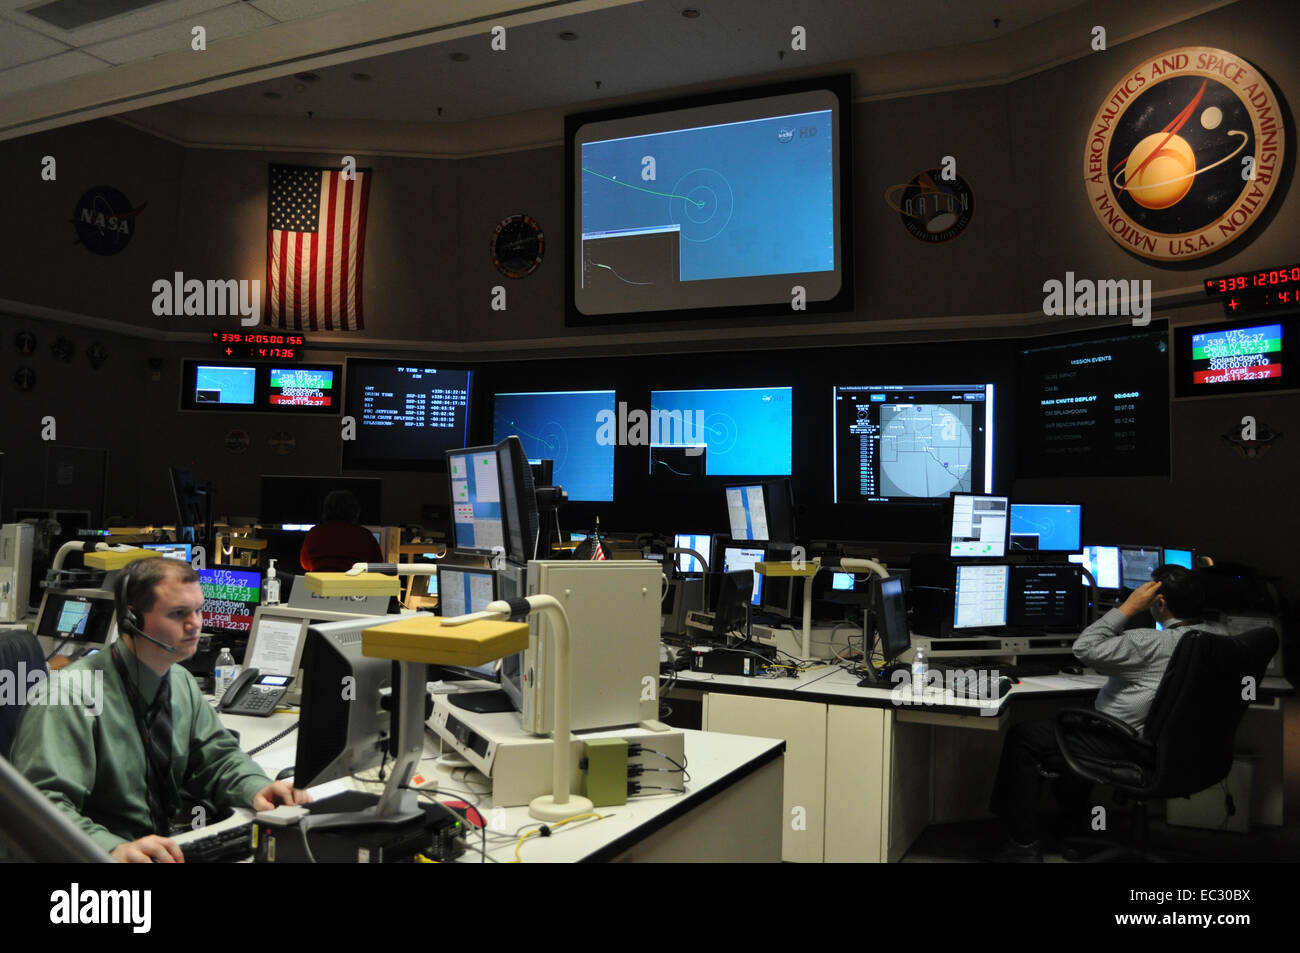 NASA Goddard Space Flight Center in Greenbelt, Maryland, ha giocato un ruolo critico nel volo di prova del #Orion navicella spaziale su dicembre 5, 2014. Goddard Reti del centro di integrazione, qui illustrato, coordinato il supporto di comunicazioni sia per il veicolo Orion e il Delta IV rocket, garantendo la completa copertura di comunicazioni attraverso la NASA Space Network e tracciamento e relè di dati satellite. Il veicolo spaziale Orion sollevati da Cape Canaveral Air Force Station's Space Launch Complex 37 in Florida a 7:05 a.m. EST. La capsula Orion spruzzato verso il basso circa quattro ore e mezzo più tardi, alle 11:29 Foto Stock